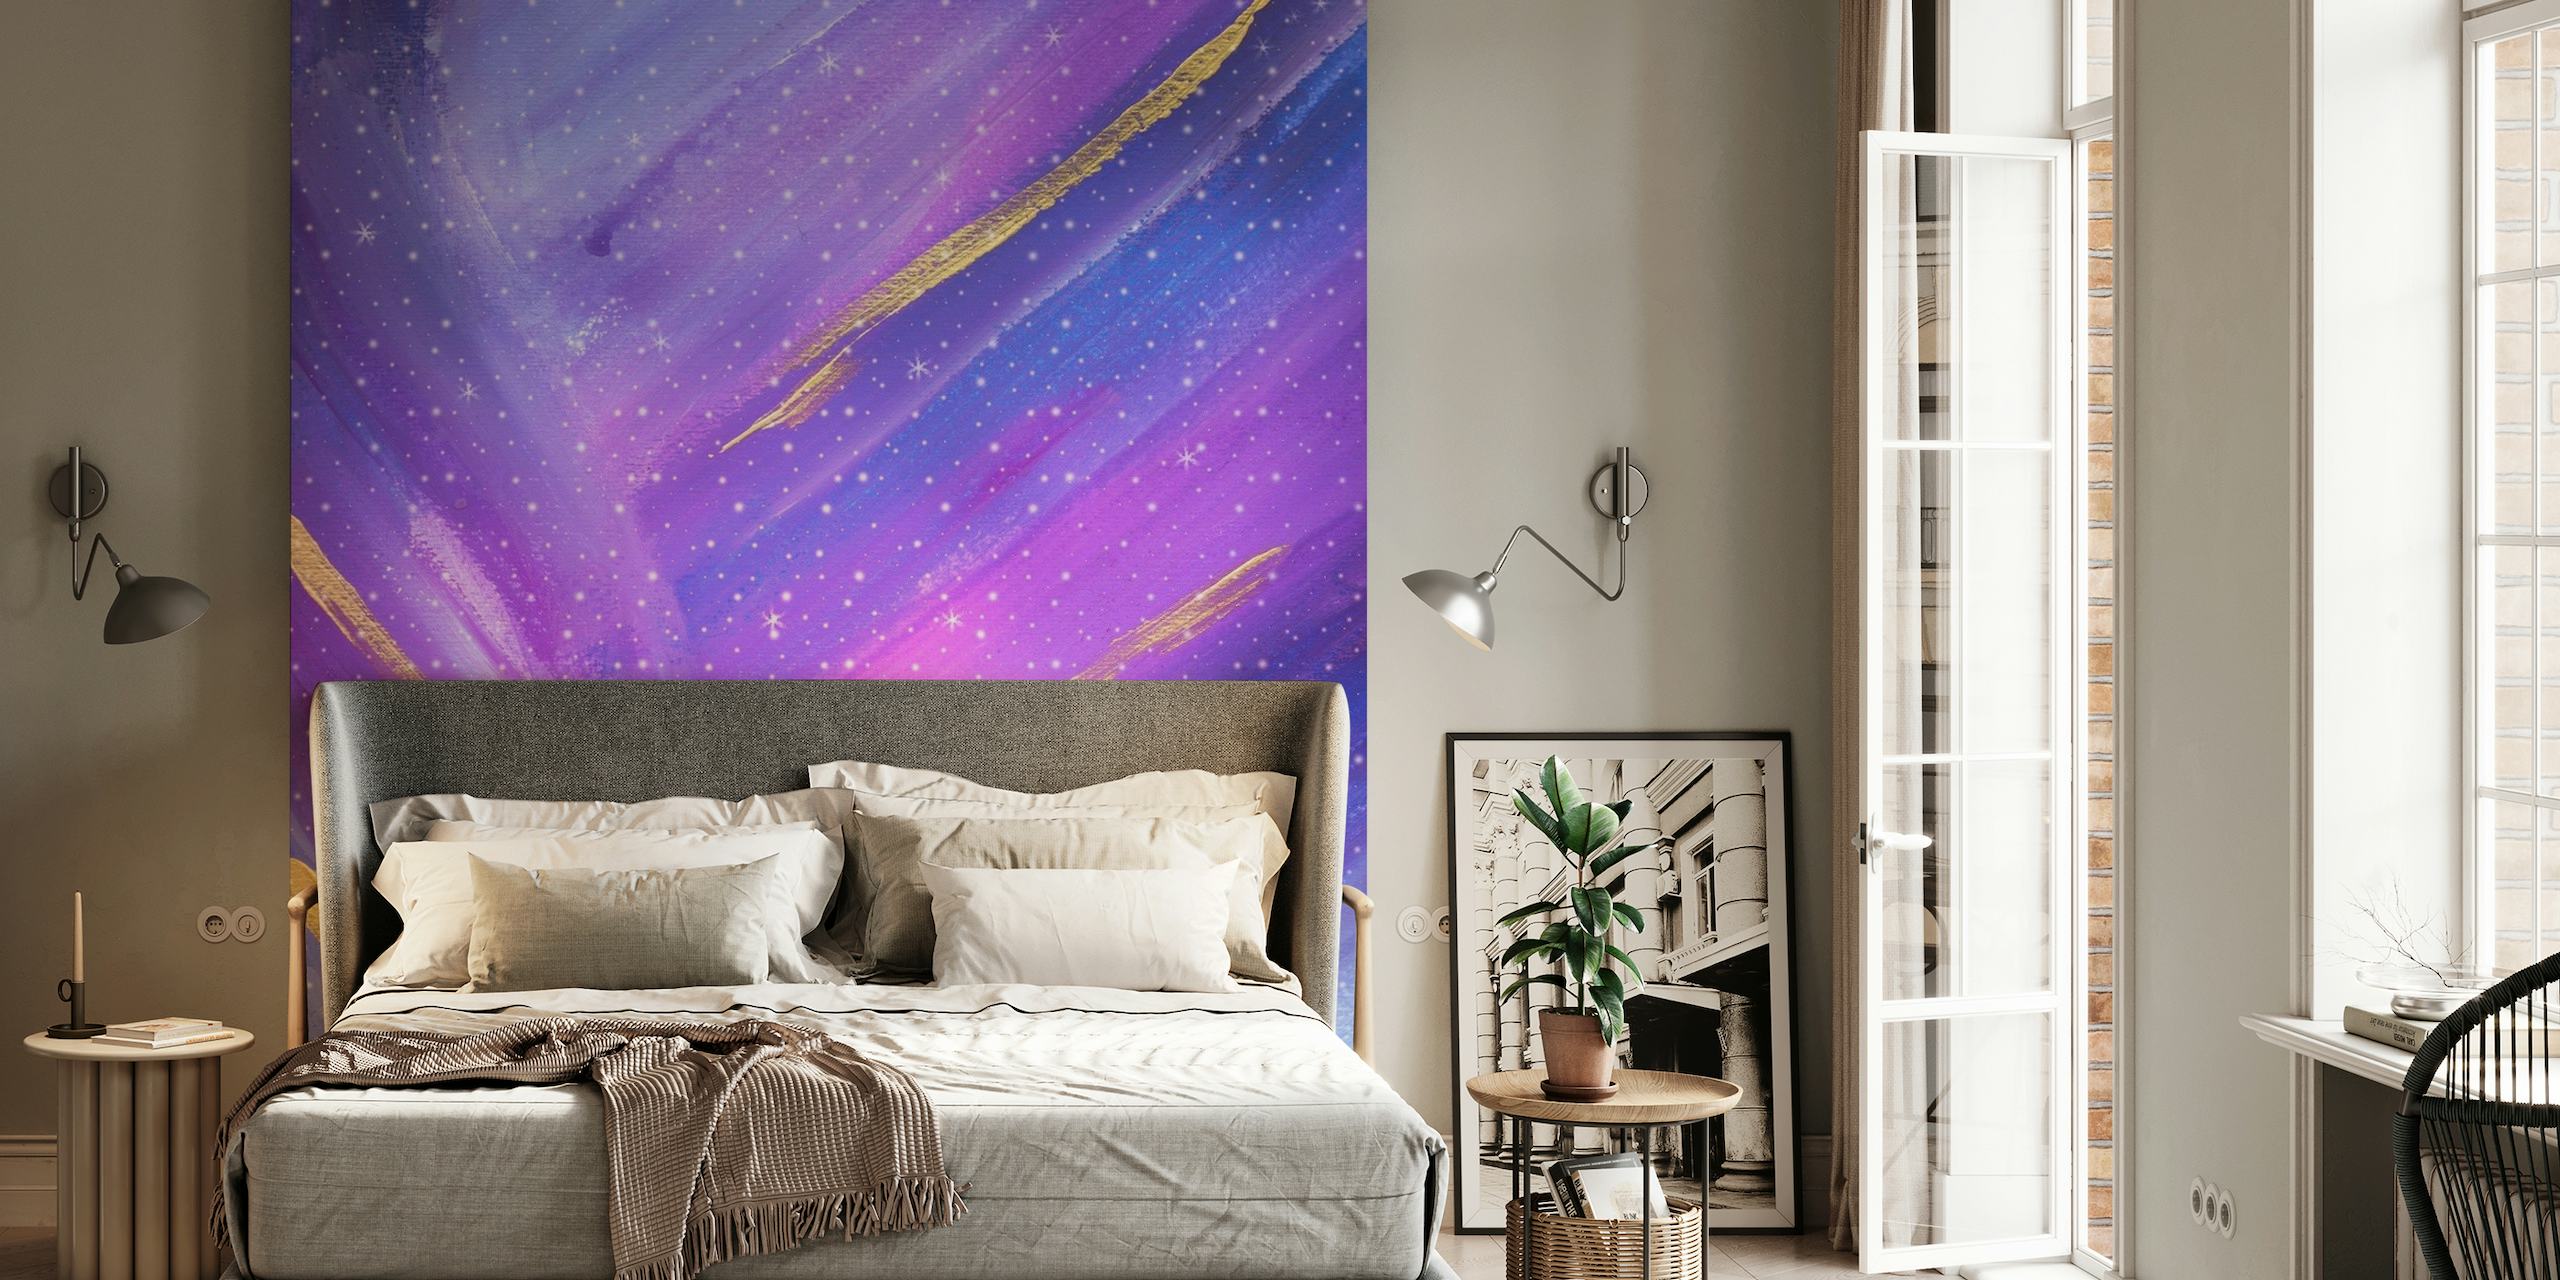 Abstrakt himmelsnebulosa tapet i lila och blå nyanser med gyllene accenter